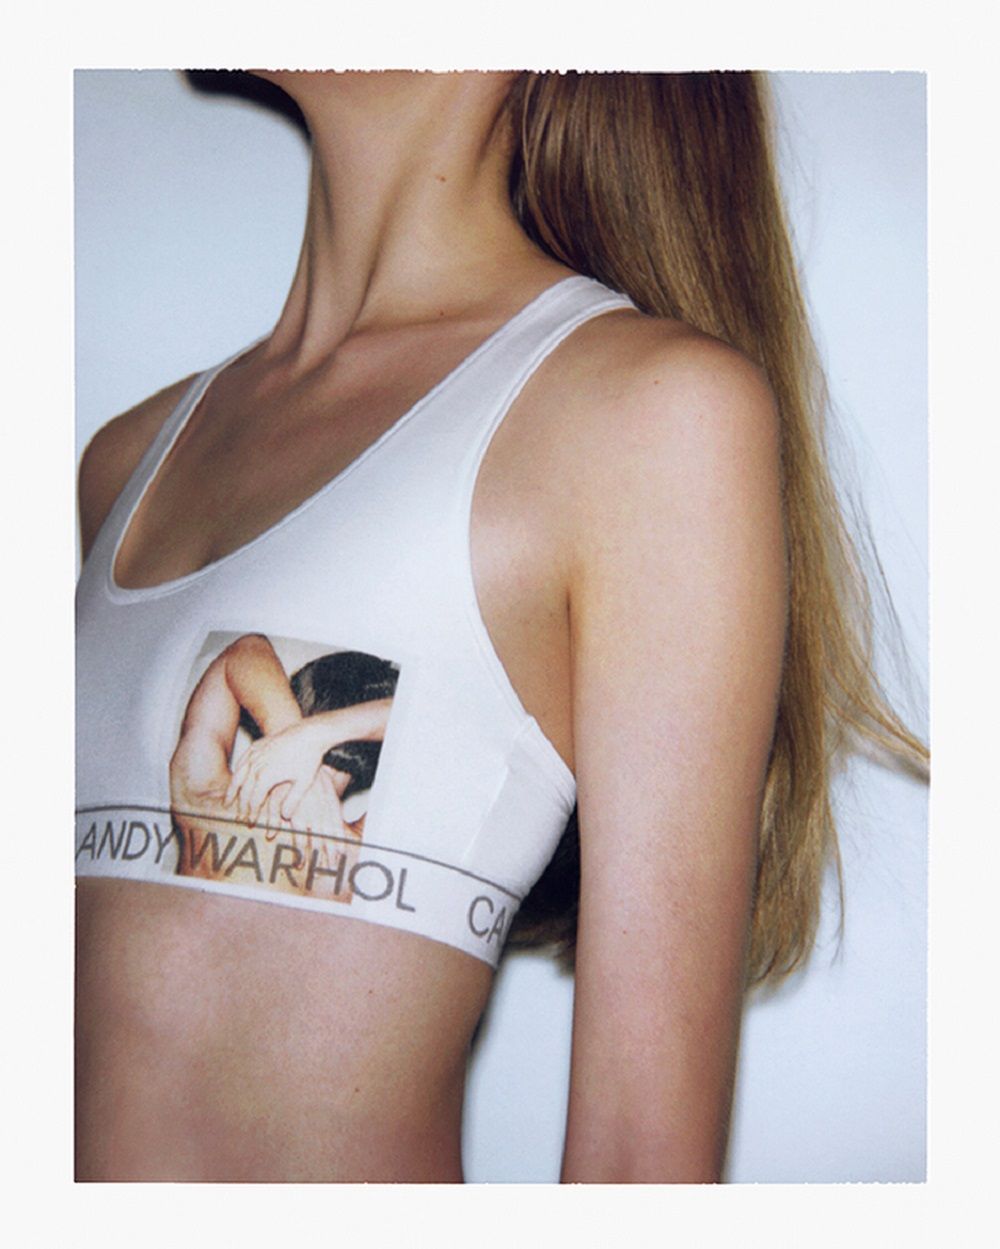 Calvin Klein Luncurkan Koleksi Pakaian Dalam Edisi Andy Warhol